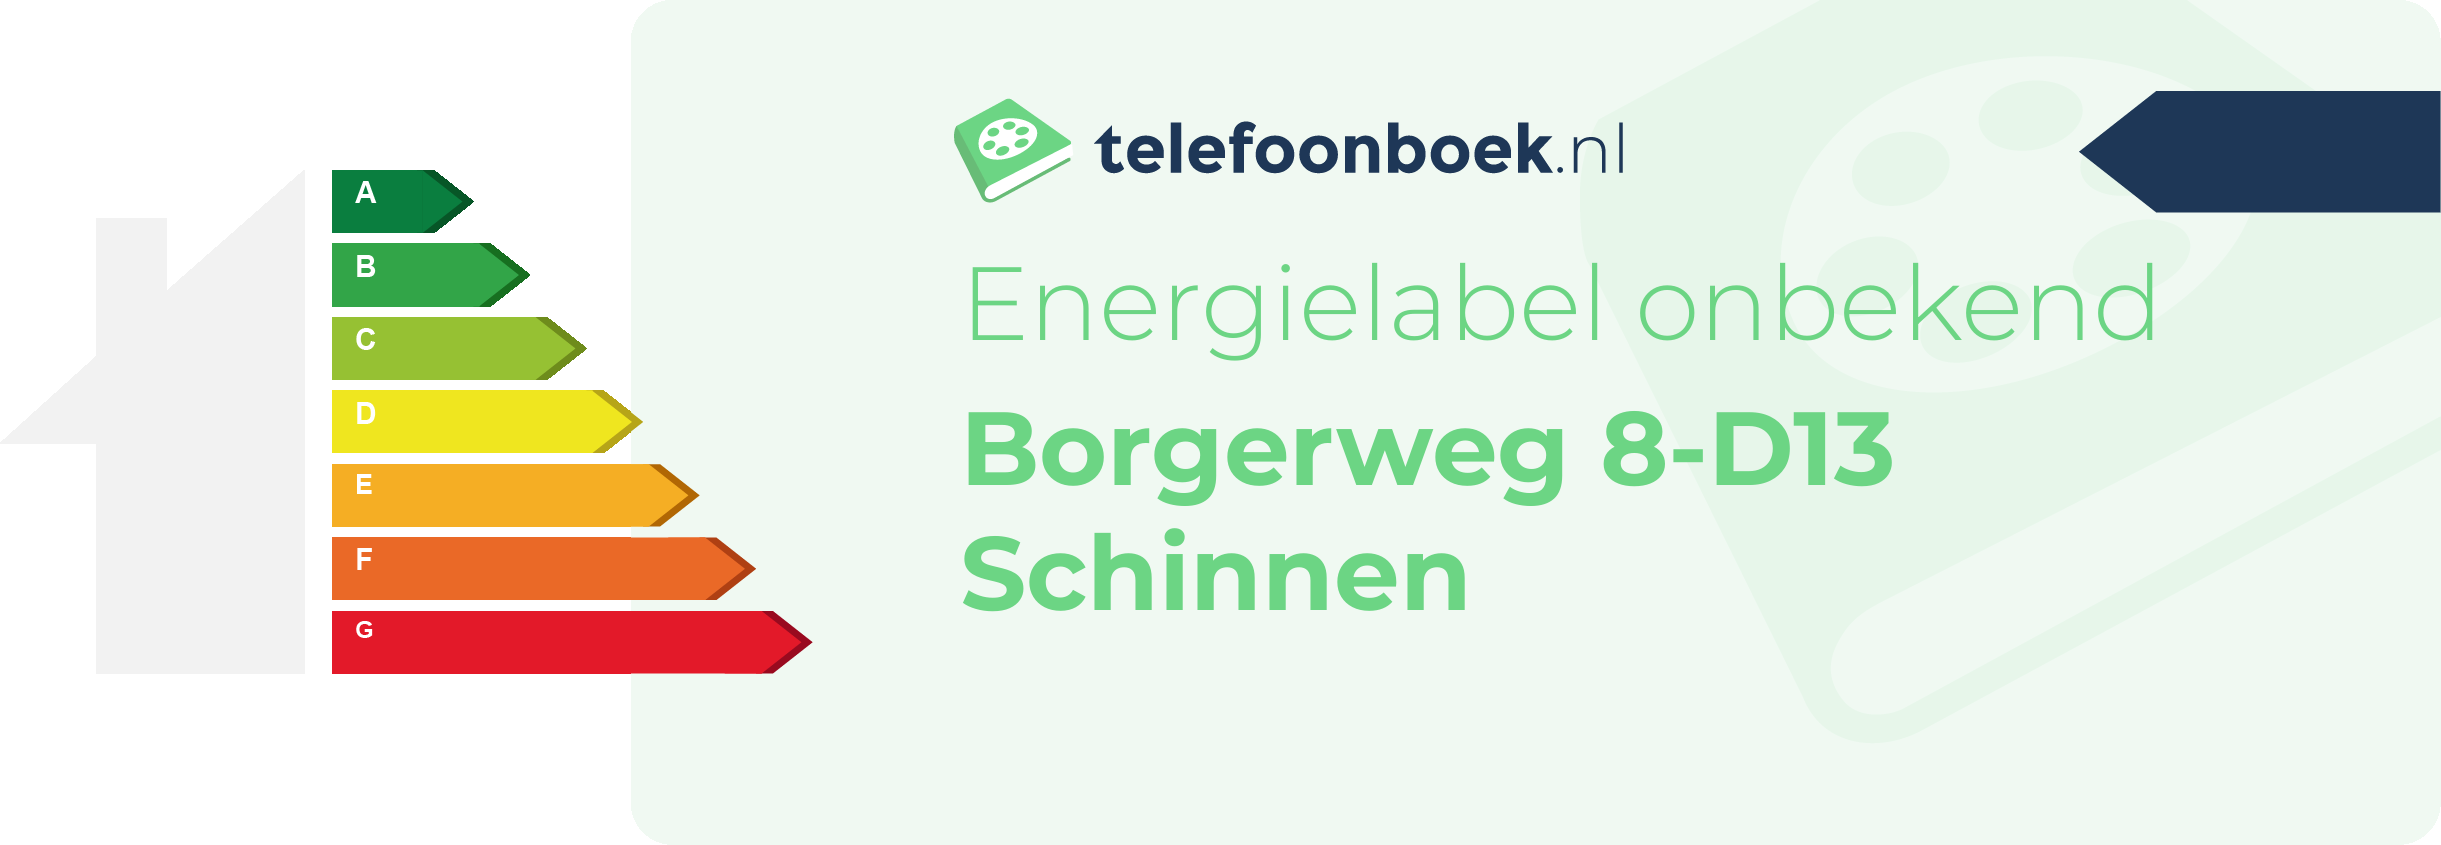 Energielabel Borgerweg 8-D13 Schinnen